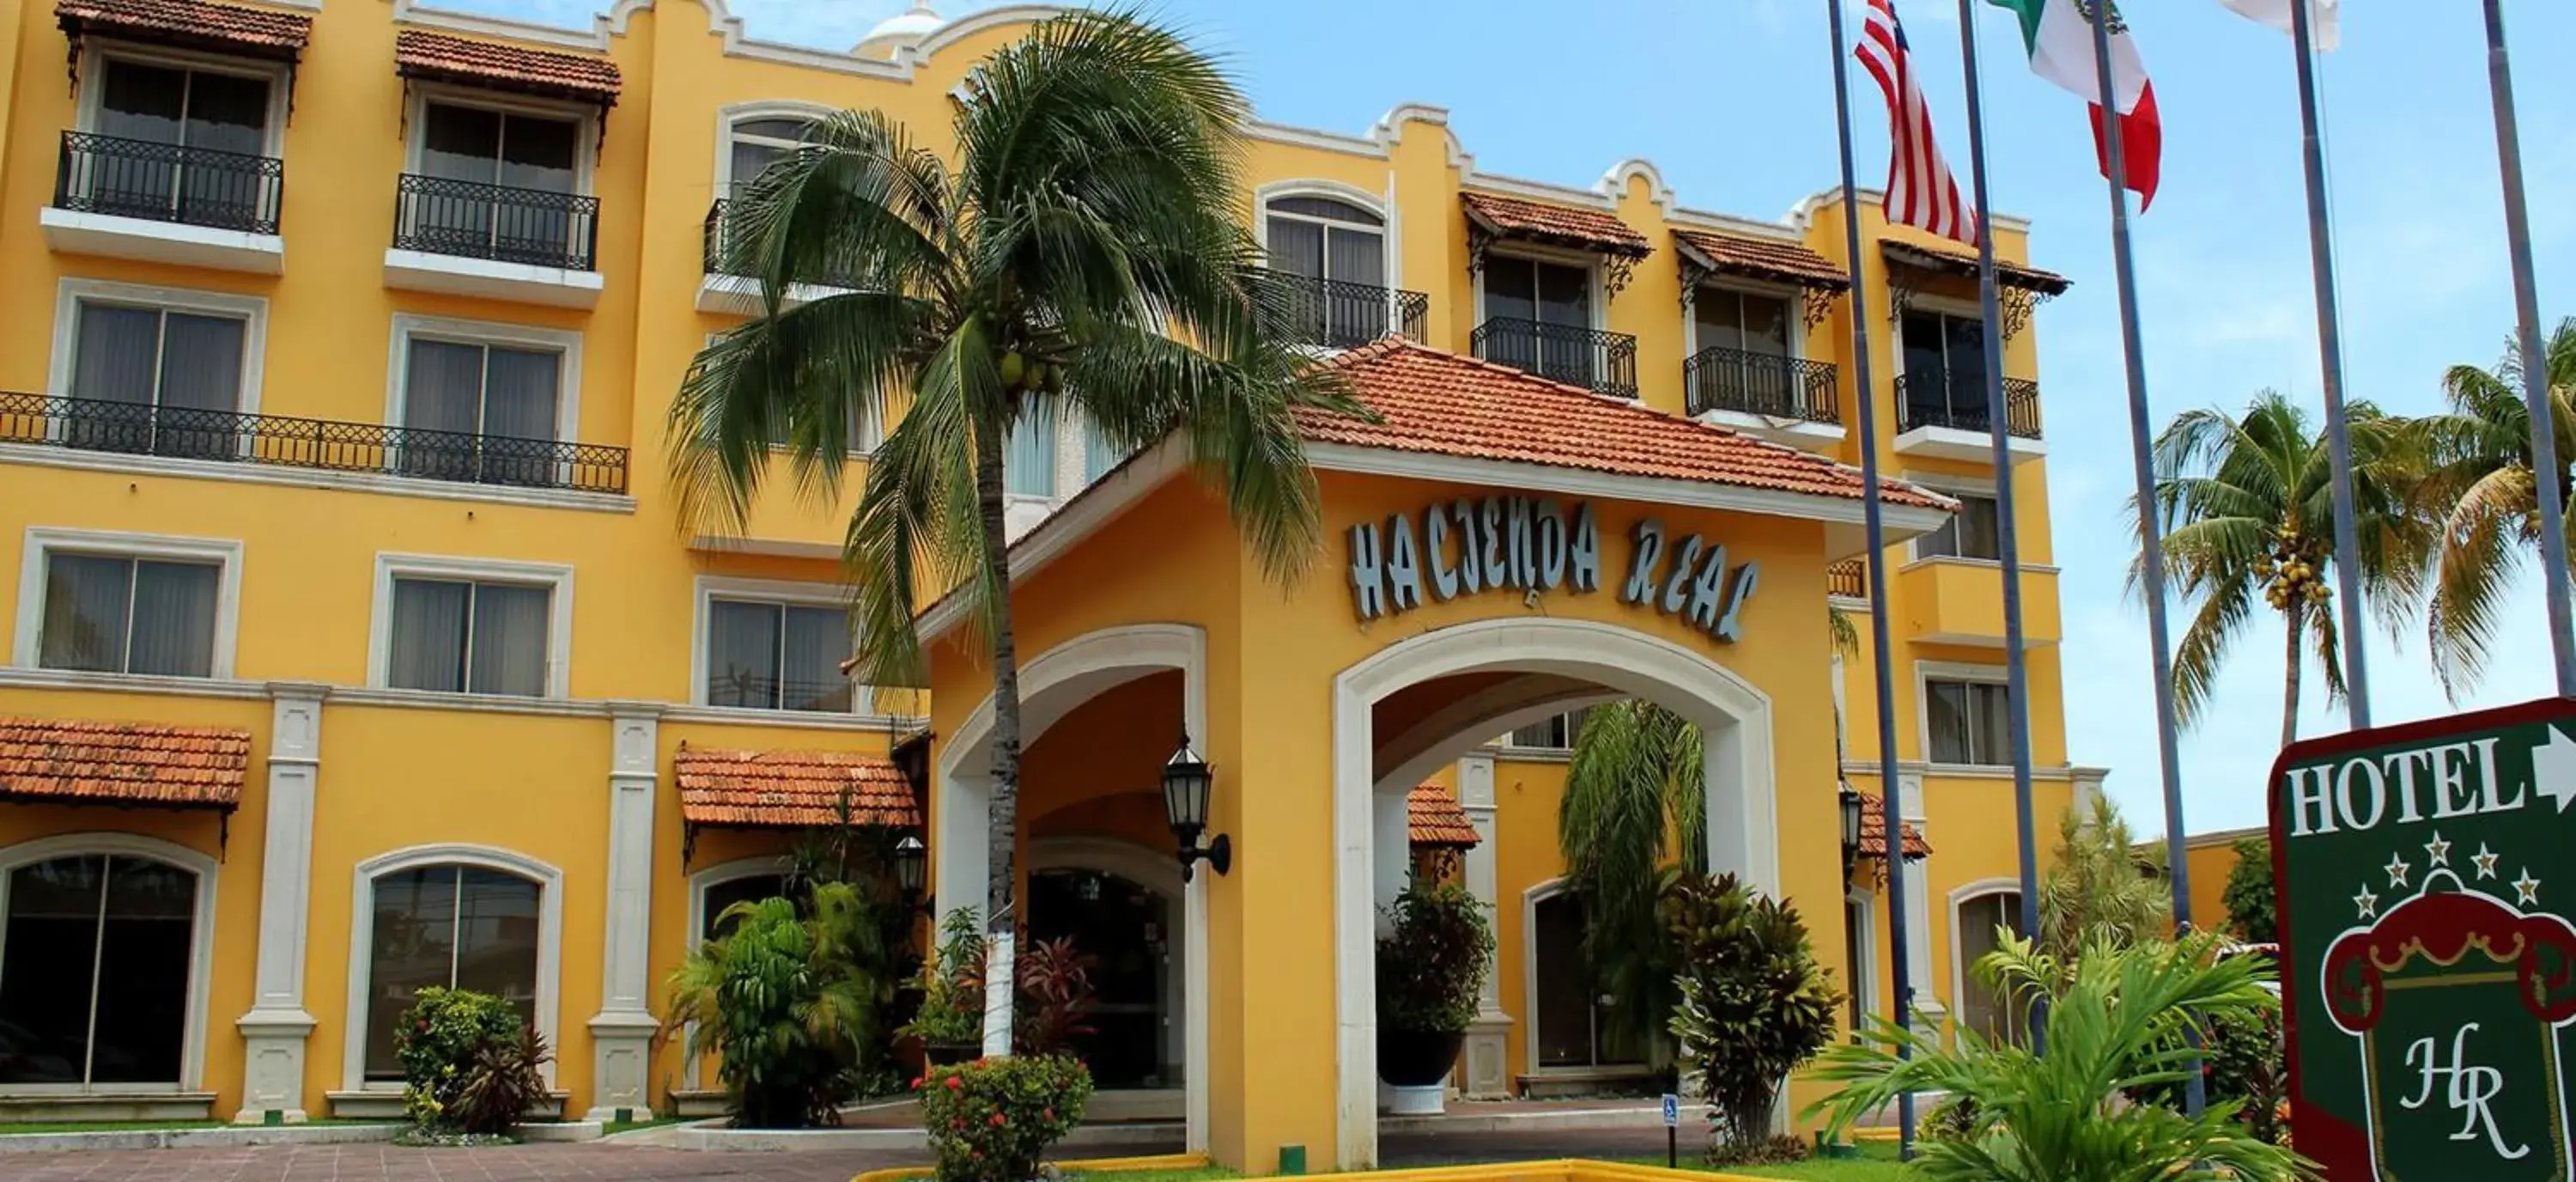 Property Building in Hotel Hacienda Real